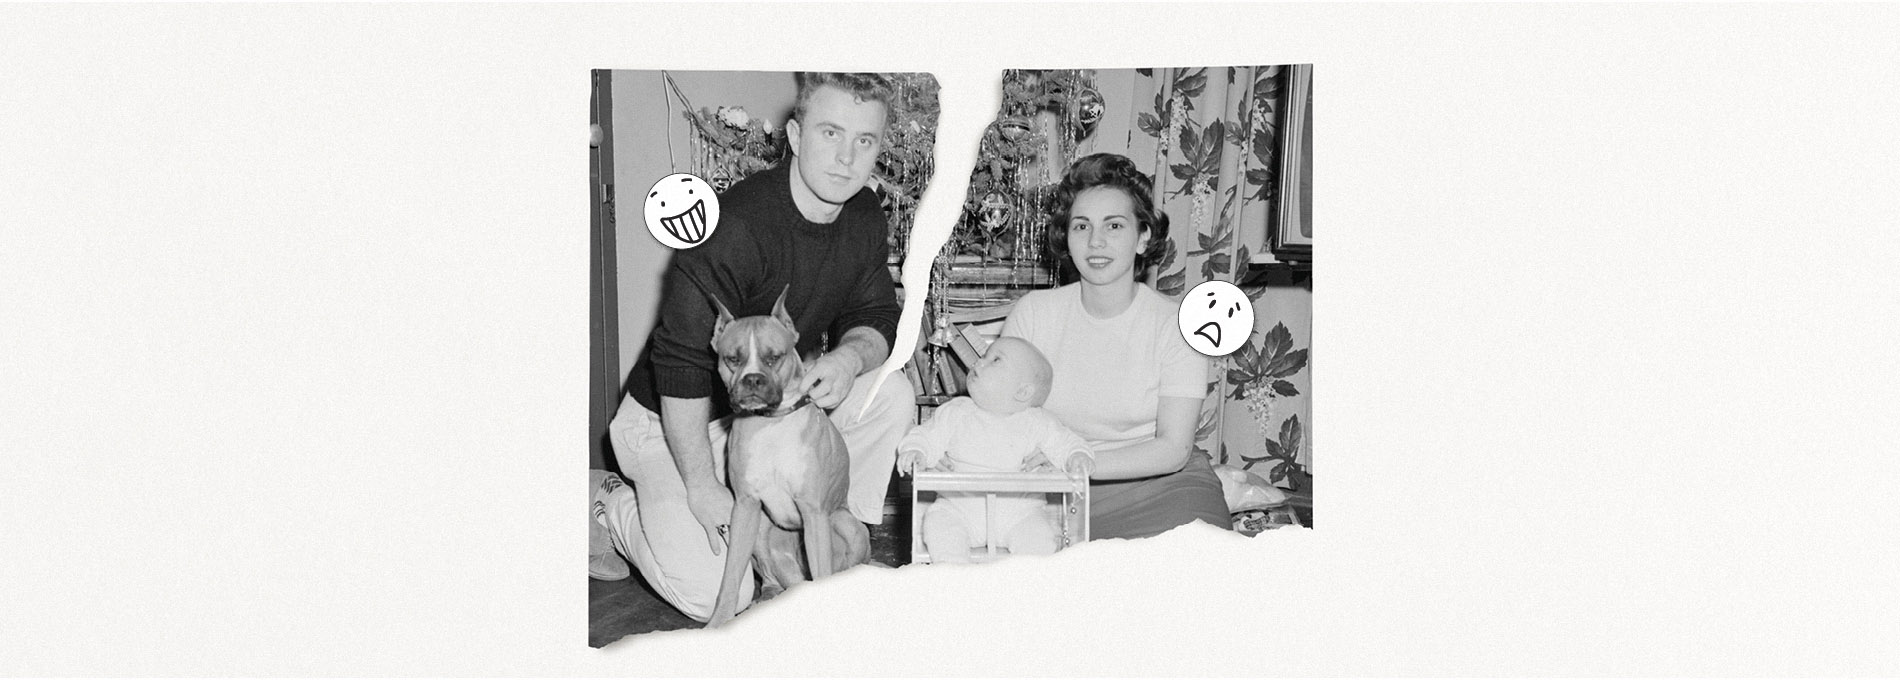 Foto preto e branca antigo de um casal, rasgada ao meio. De um lado o pai com o cachorro e do outro lado a mãe com a criança ainda bebê